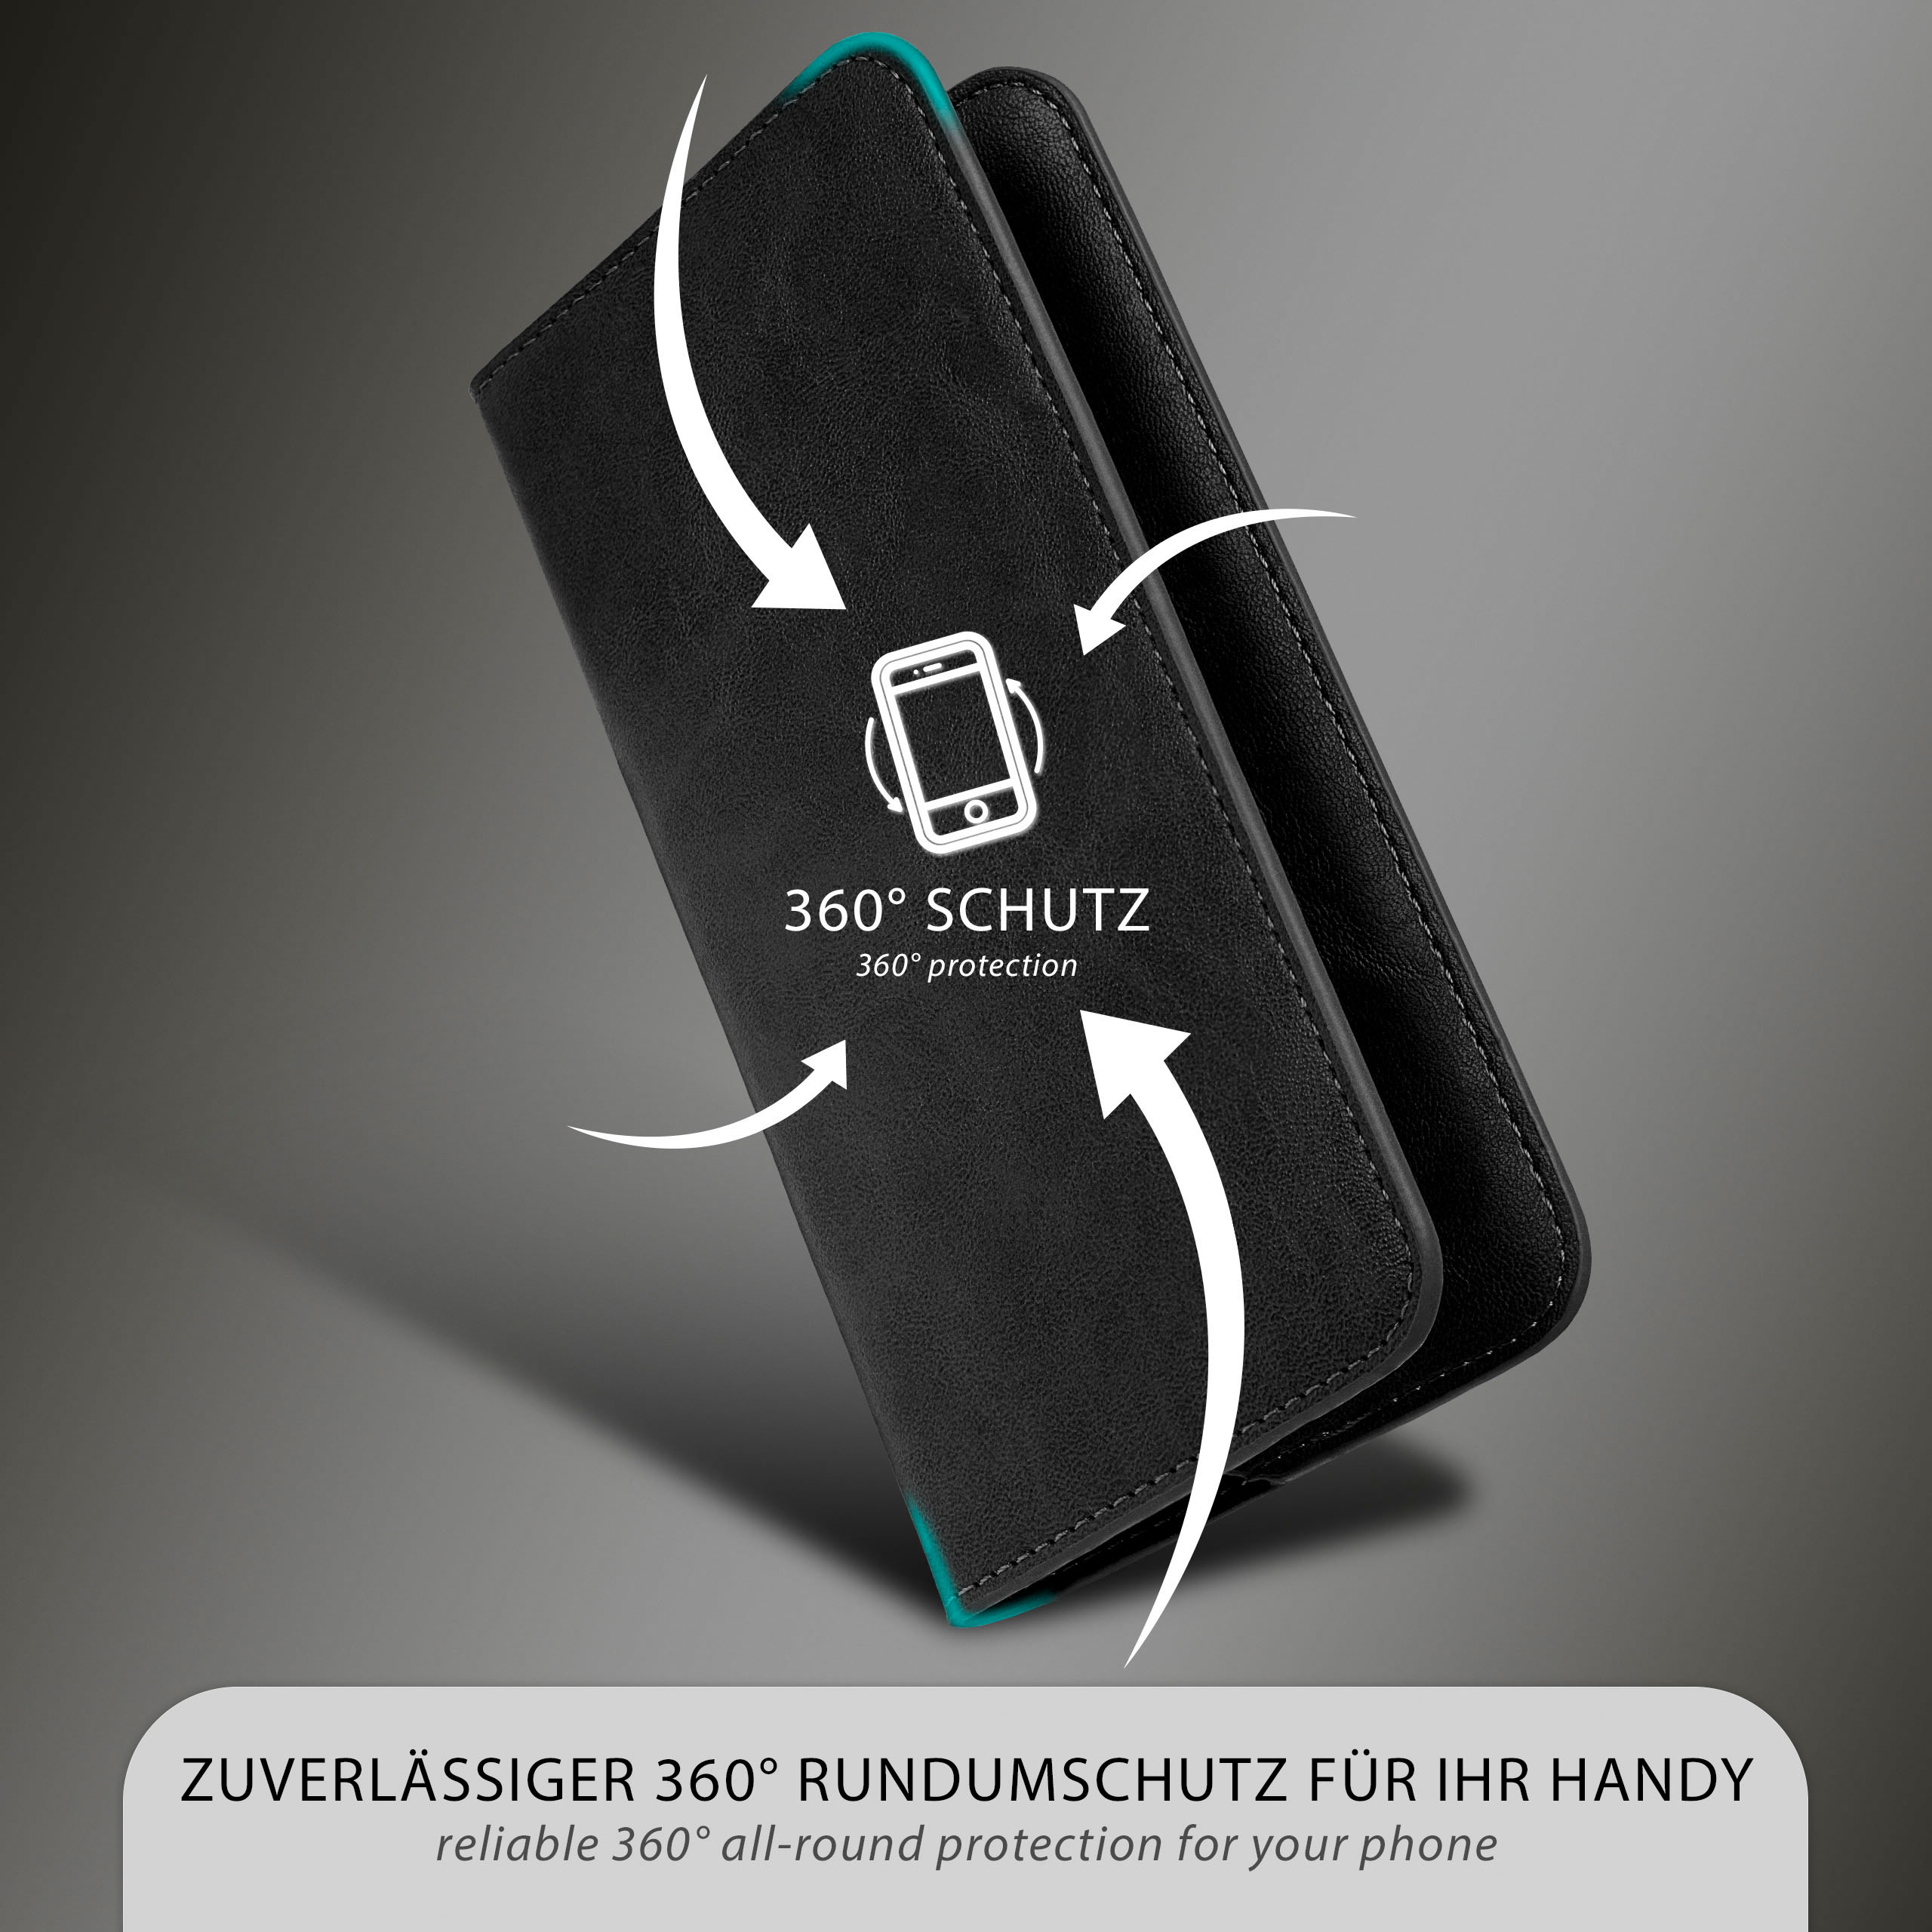 Case, Cover, Purse Flip Schwarz MOEX 8T, OnePlus,